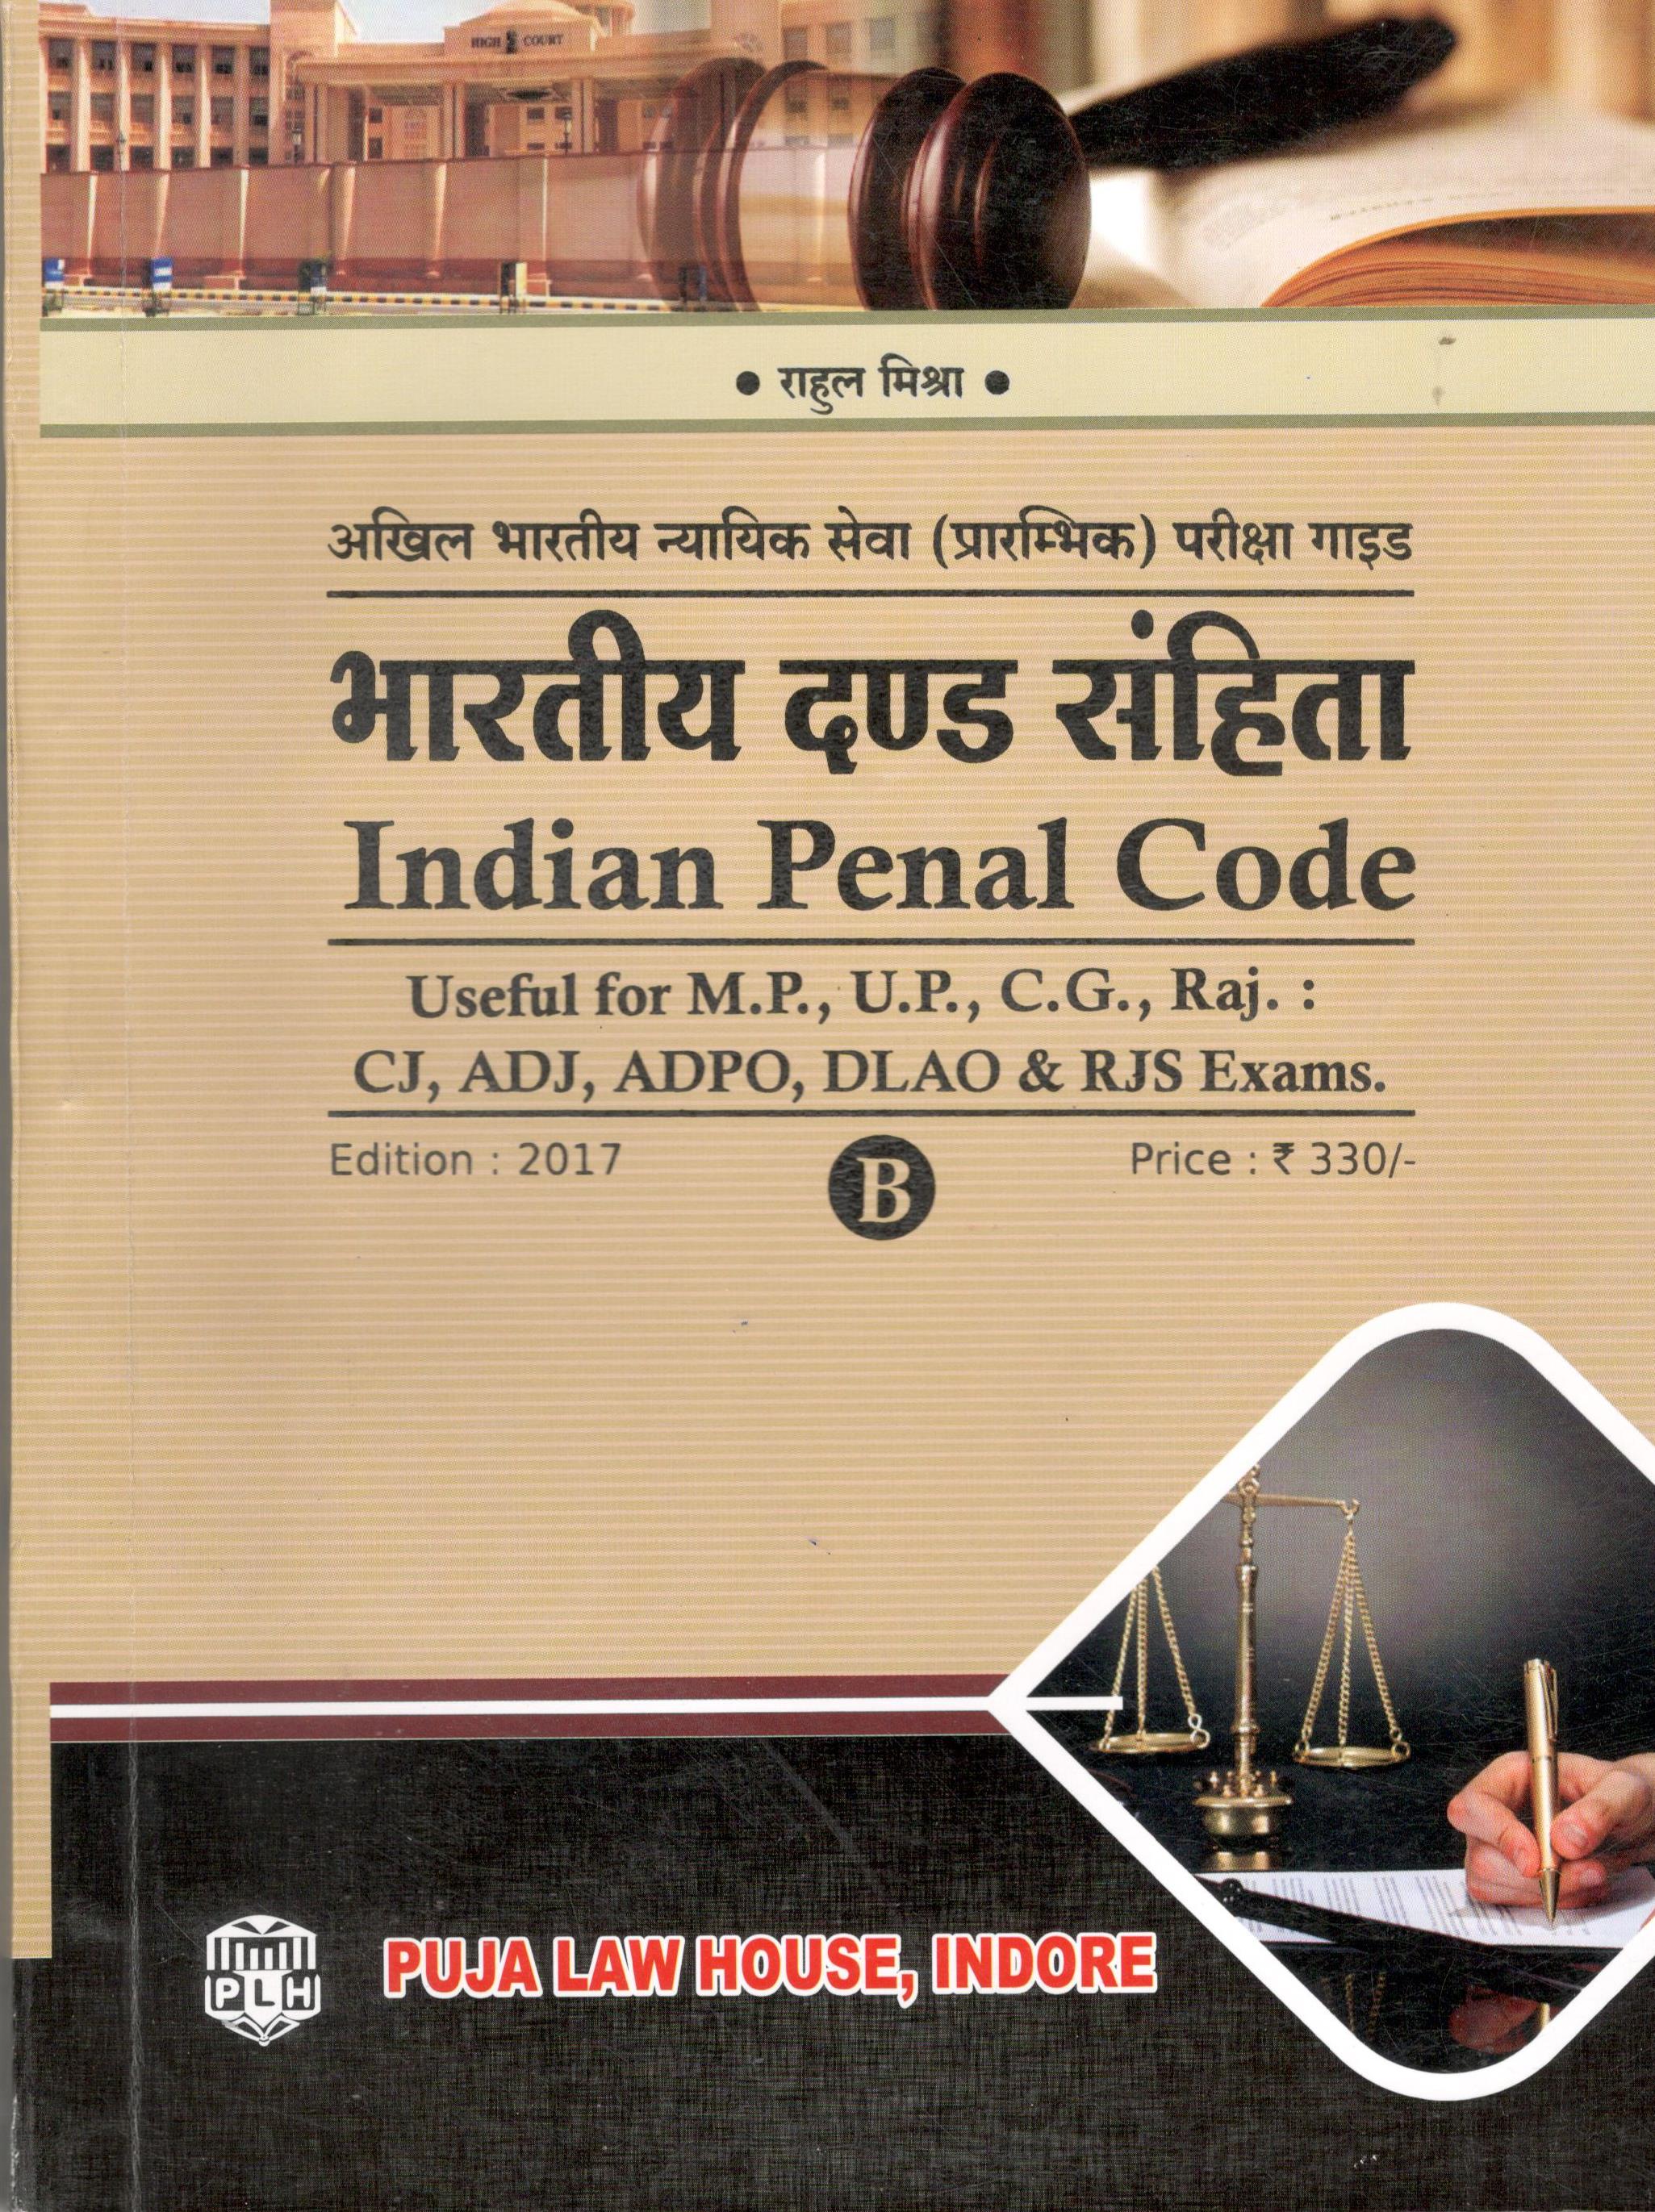  Buy राहुल मिश्रा - भारतीय दंड संहिता (अखिल भारतीय न्यायिक सेवा और सिविल परीक्षा सीरीज-2) / Indian Penal Code (All India Judicial Services & Civil Exam Series-2)